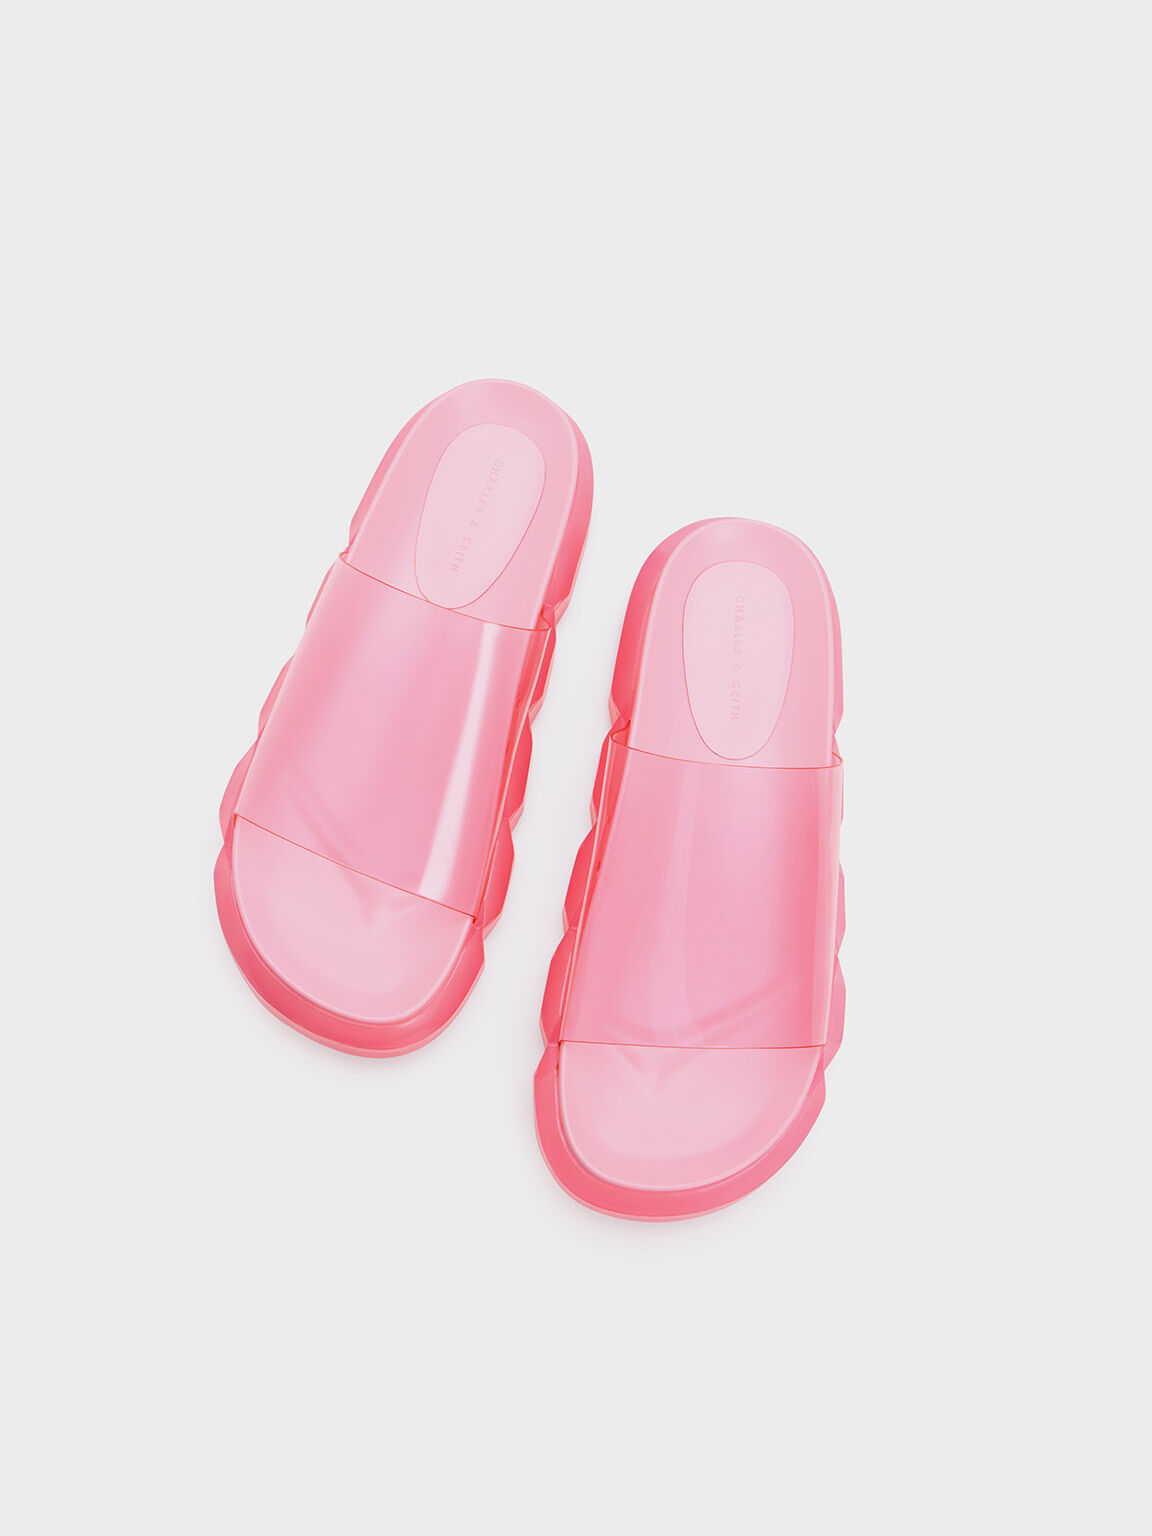 Fia See-Through Slide Sandals, Light Pink, hi-res